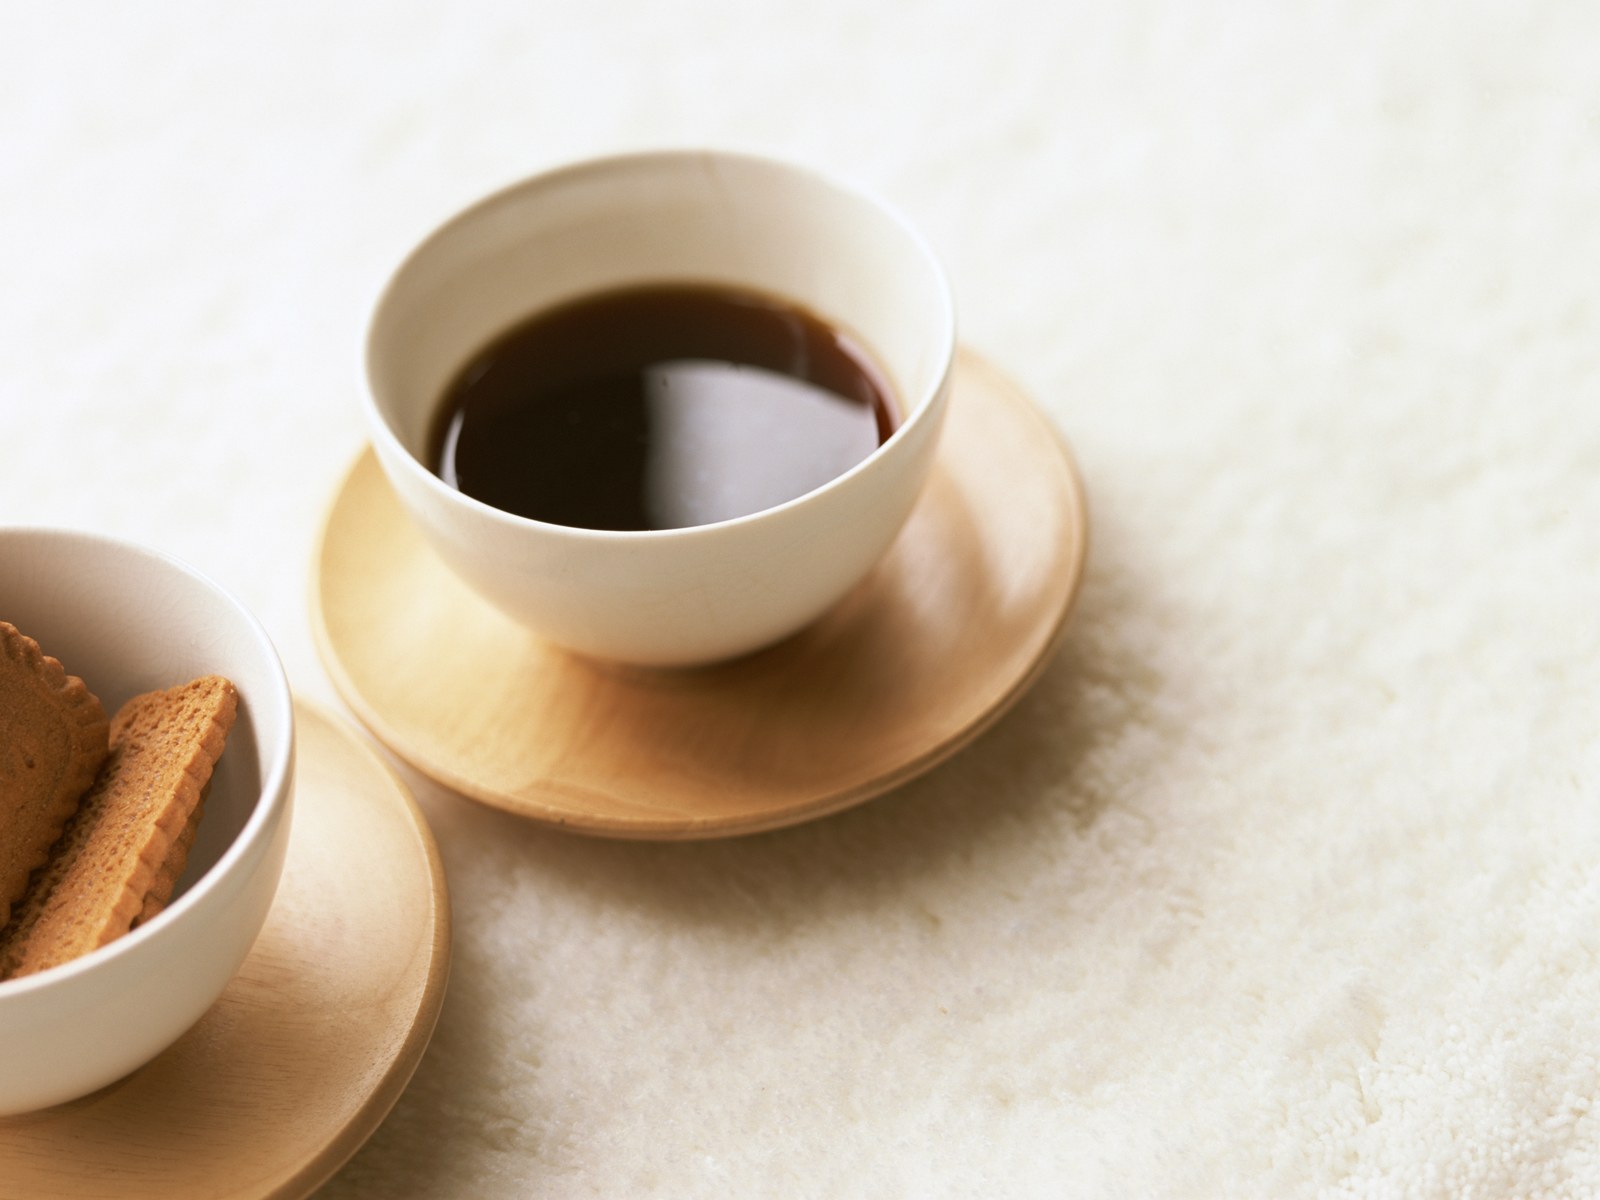 壁纸1600x1200 早餐咖啡图片 品味咖啡摄影壁纸 日本茶道文化与健康饮品壁纸 日本茶道文化与健康饮品图片 日本茶道文化与健康饮品素材 摄影壁纸 摄影图库 摄影图片素材桌面壁纸